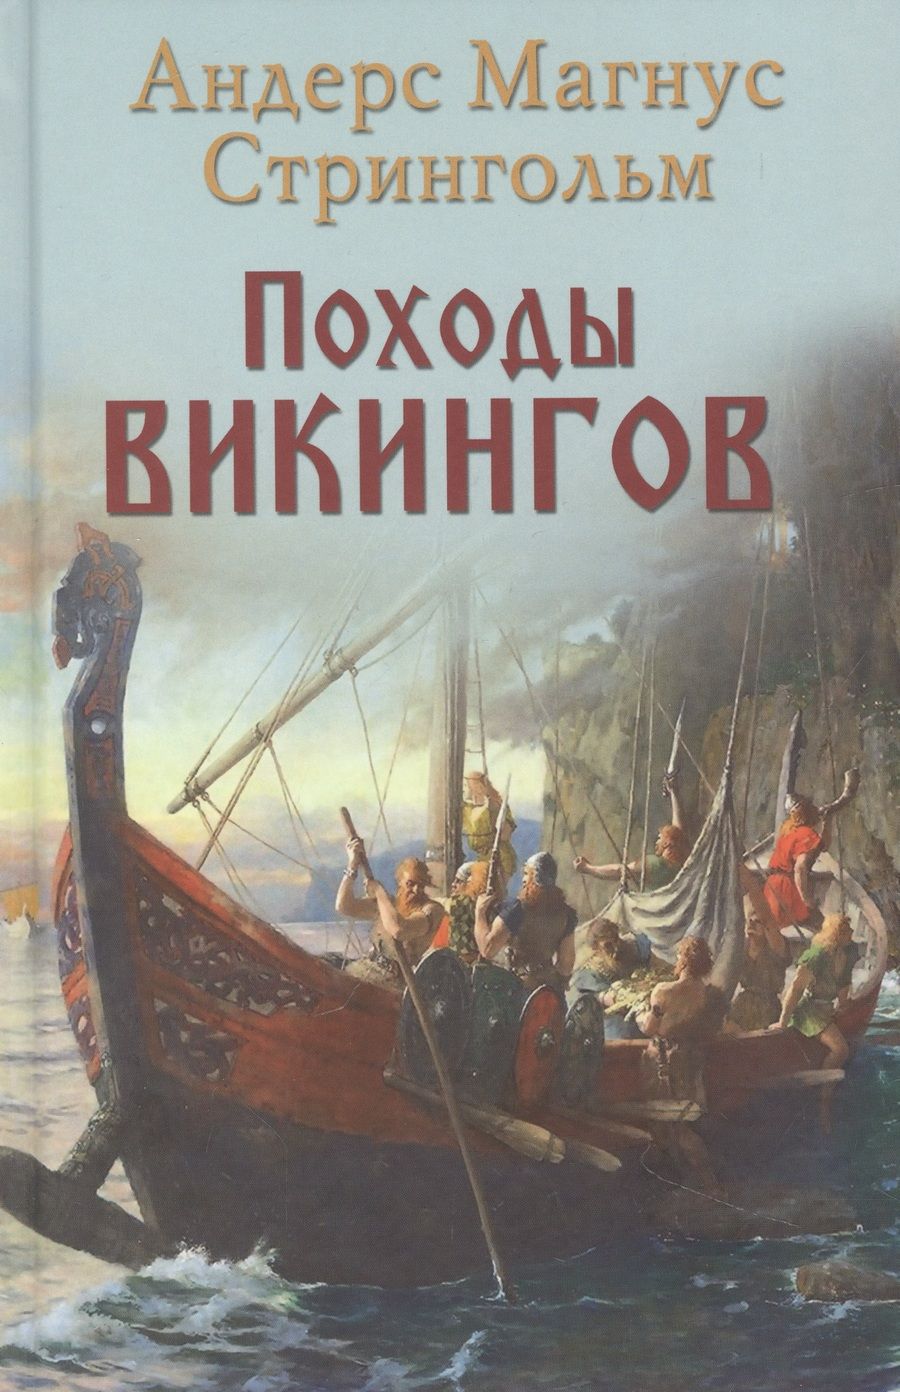 Обложка книги "Стрингольм: Походы викингов"